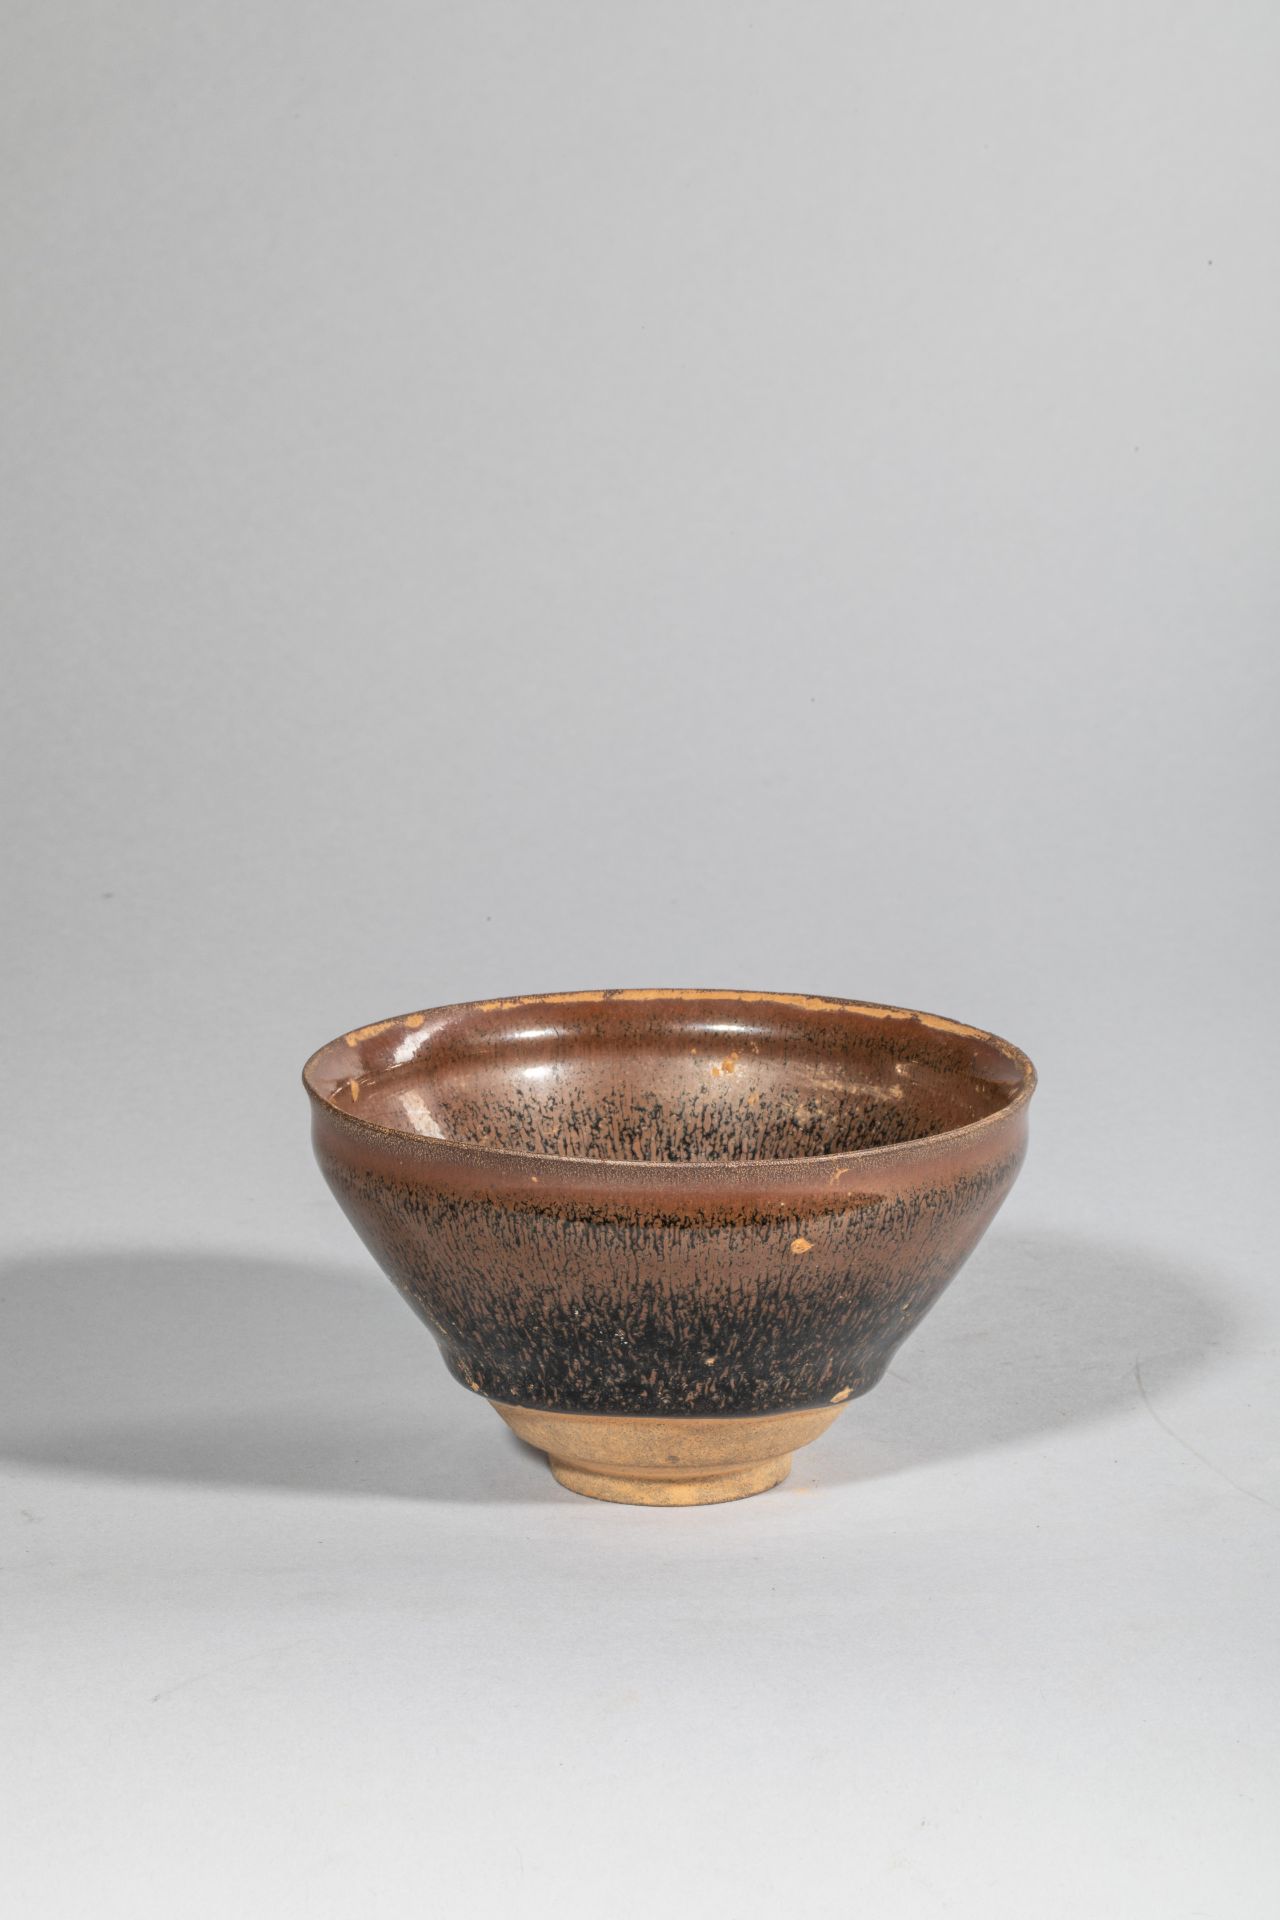 Coupelle temoku en grès porcelaineux à glaçure brune dites 'fourure de lièvre" Chine Dynastie Yuan - Image 2 of 4